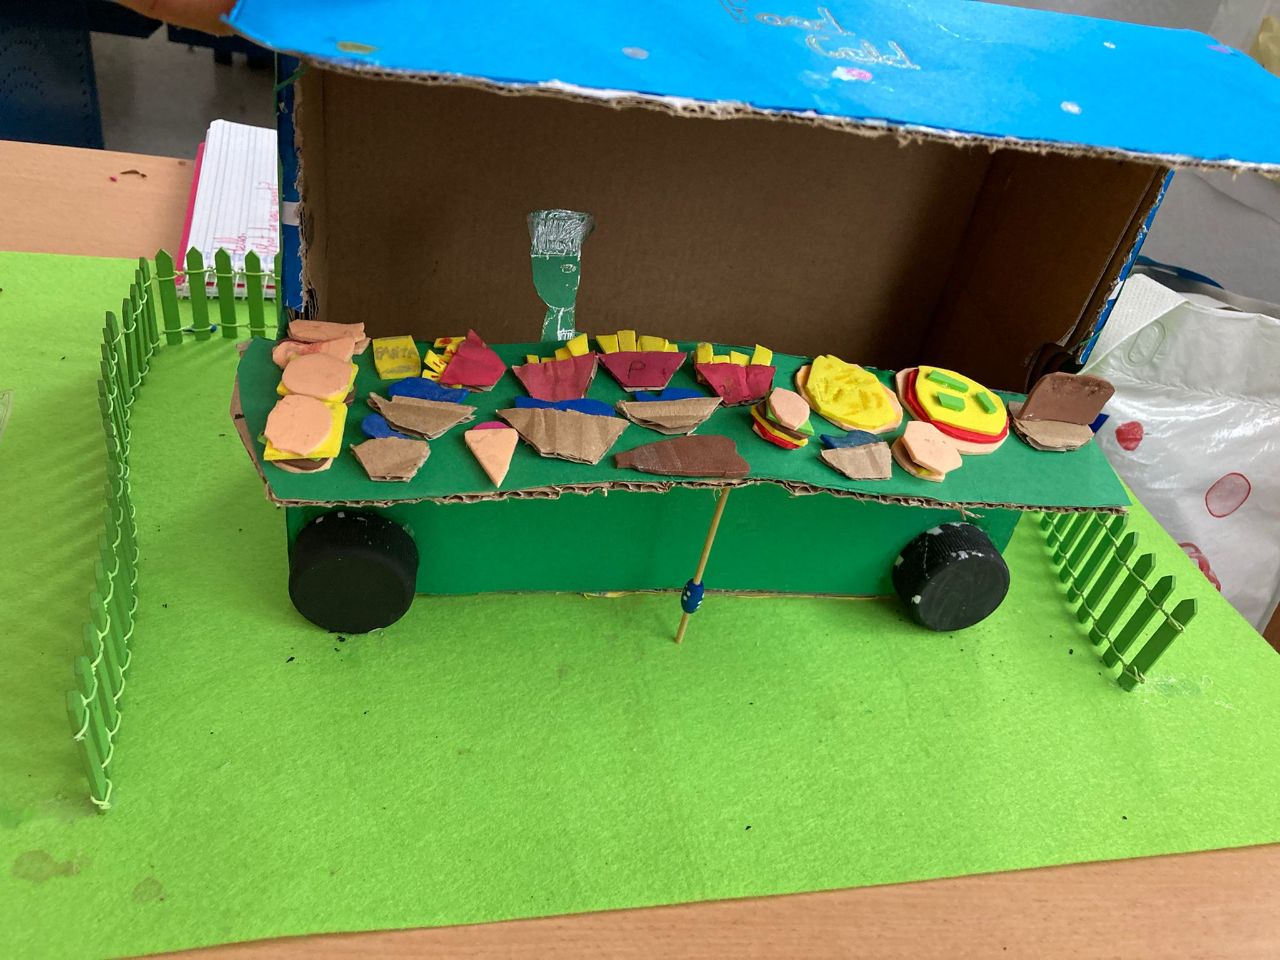 En la imagen se puede ver una camioneta que vende comida hecha con materiales reciclado hecha por niños donde se ven diferentes platos